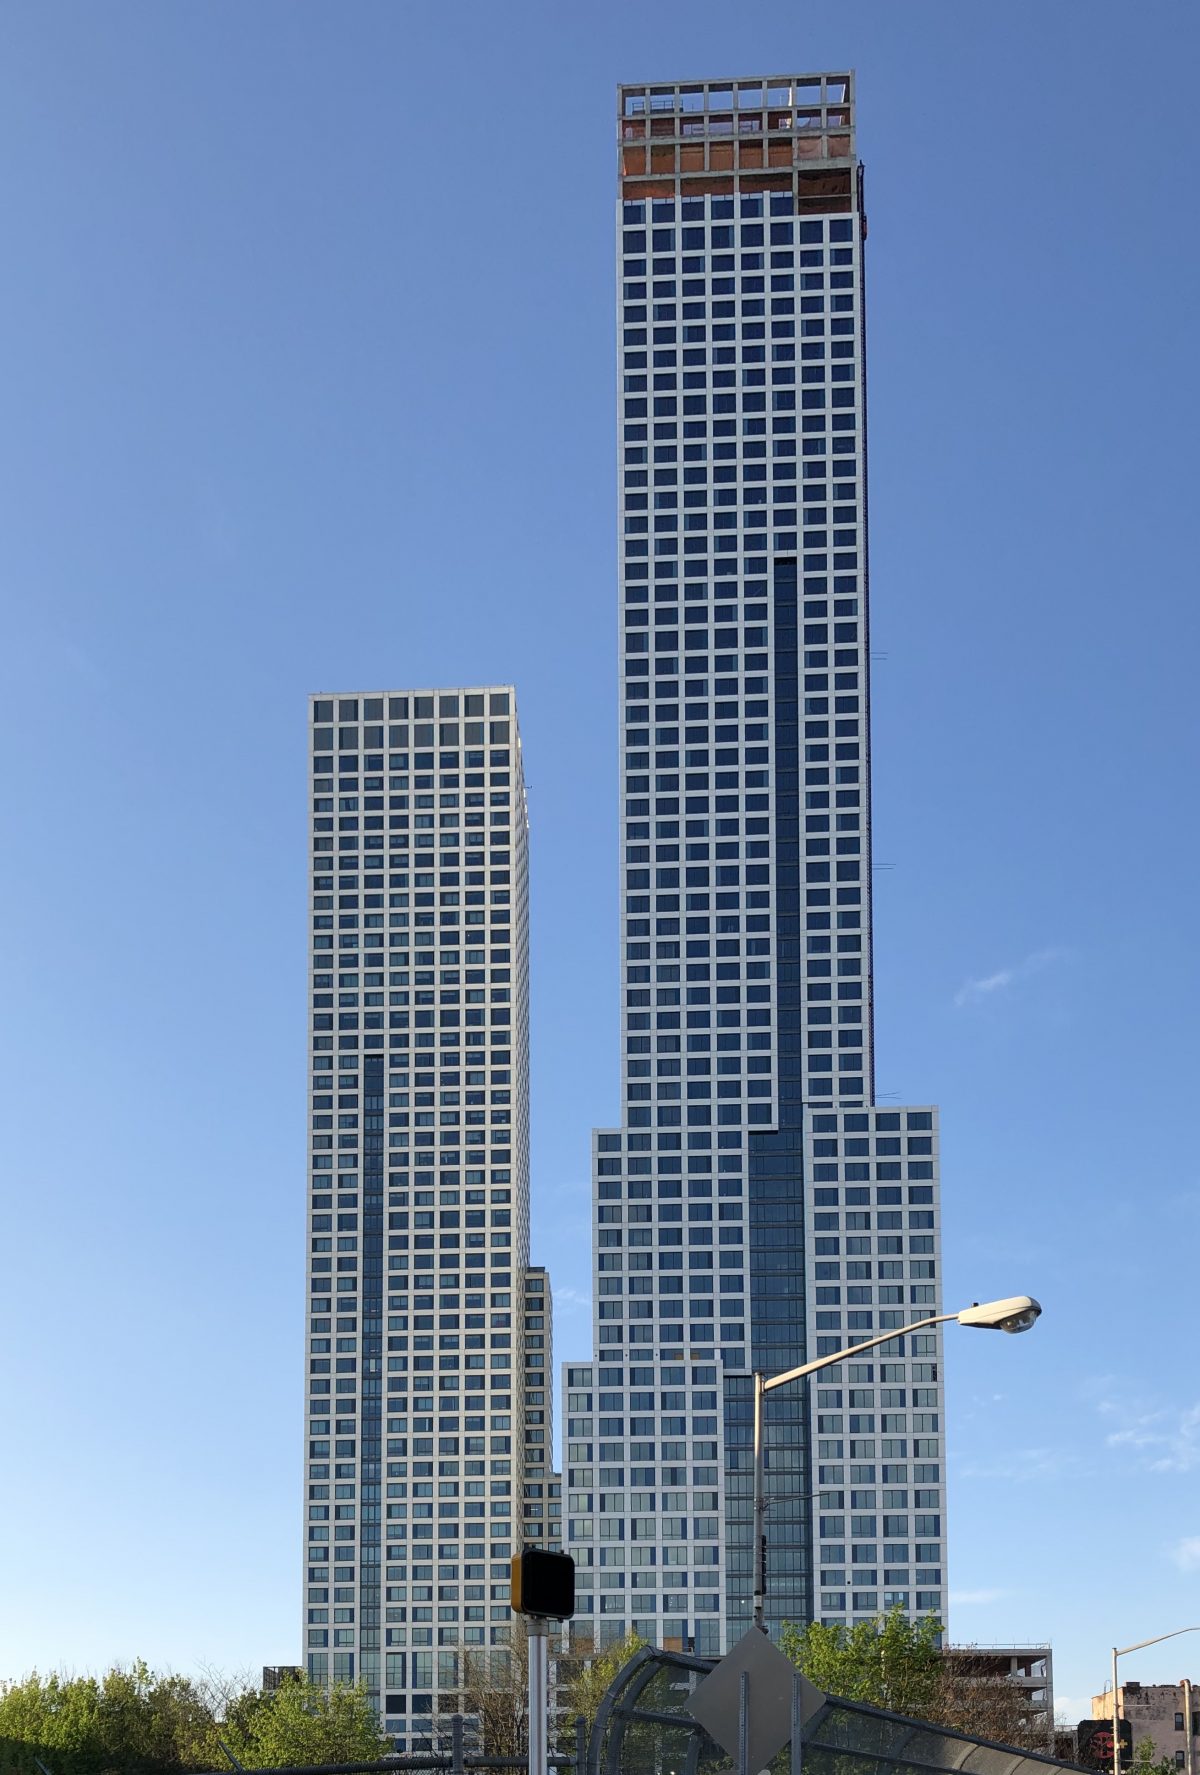 Journal Squared 2 - The Skyscraper Center